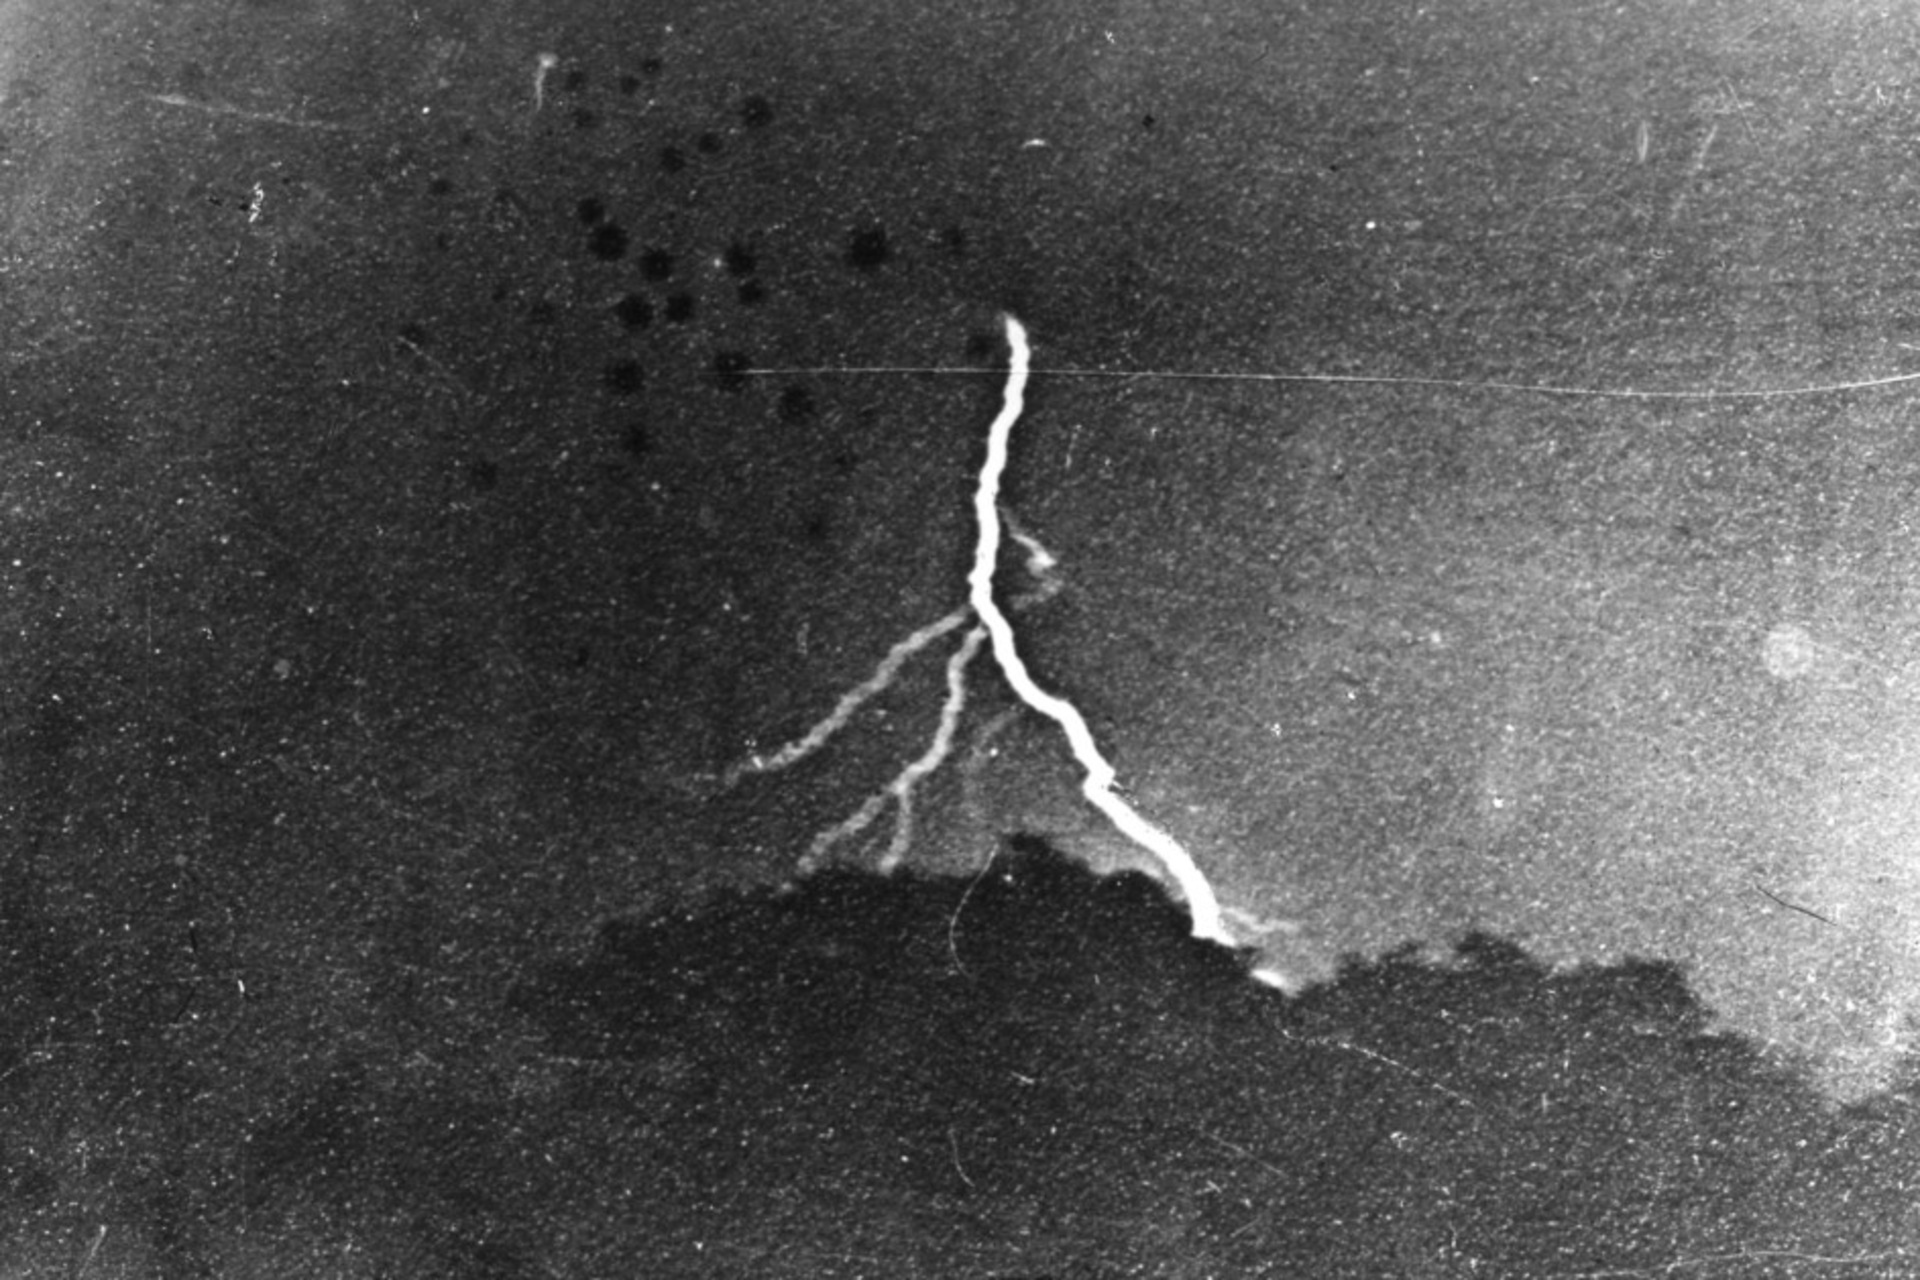 Fulmine: la prima fotografia di un fulmine, scattata da William Nicholson Jennings il 2 settembre 1882 a Filadelfia, e conservata nella forma di una stampa alla gelatina d'argento al The Franklin Institute